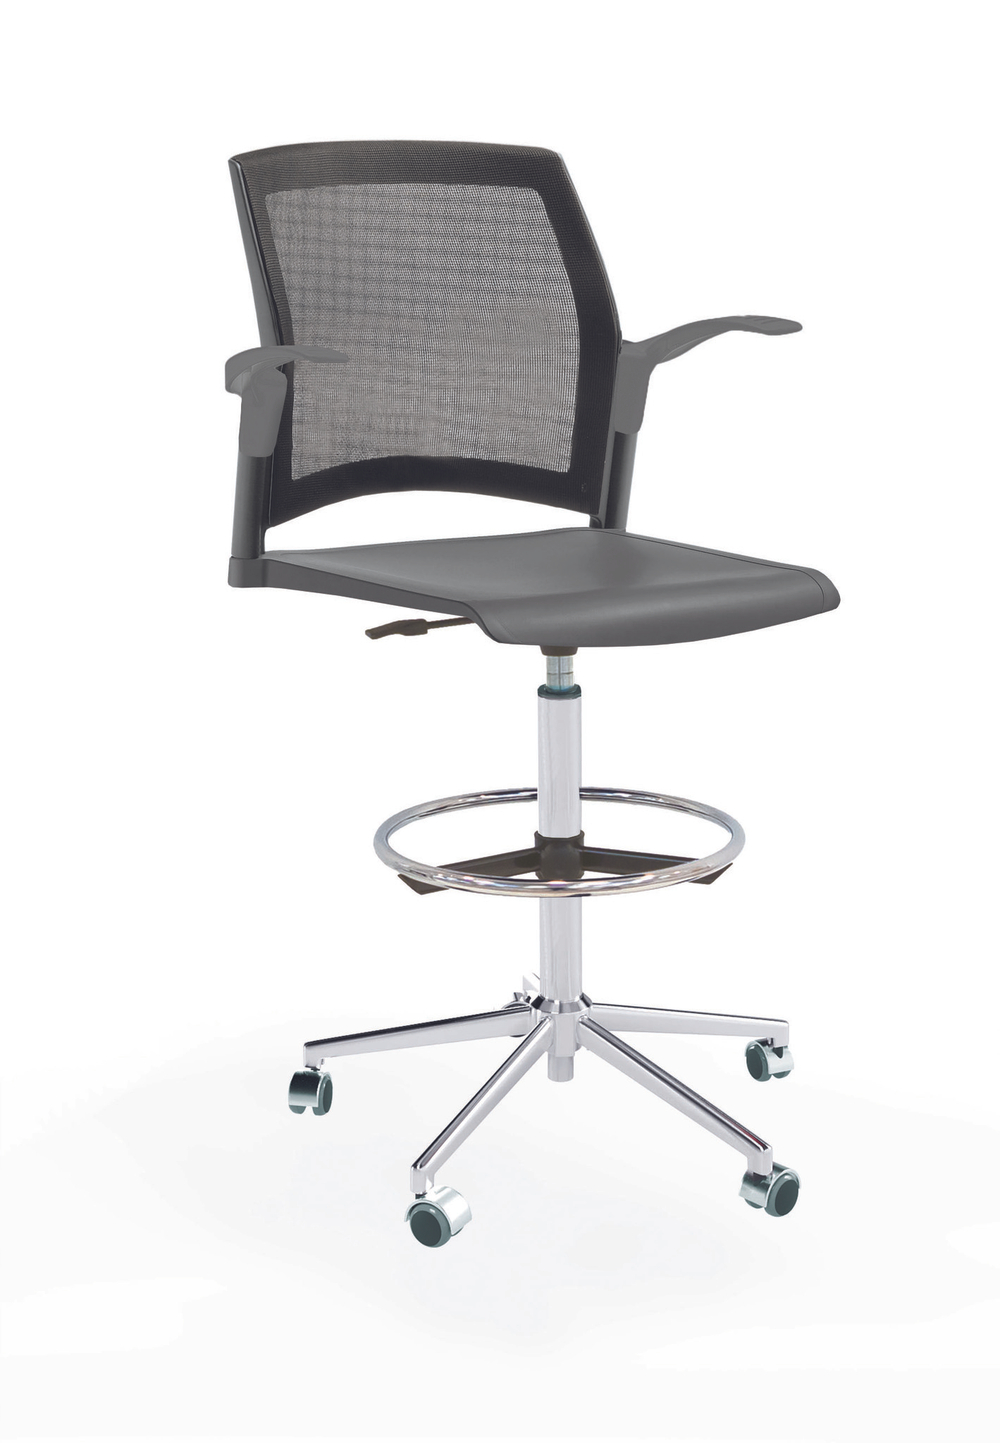 Кресло Rewind каркас хром, пластик серый, база стальная хромированная, с открытыми подлокотниками, сиденье без обивки, спинка-сетка